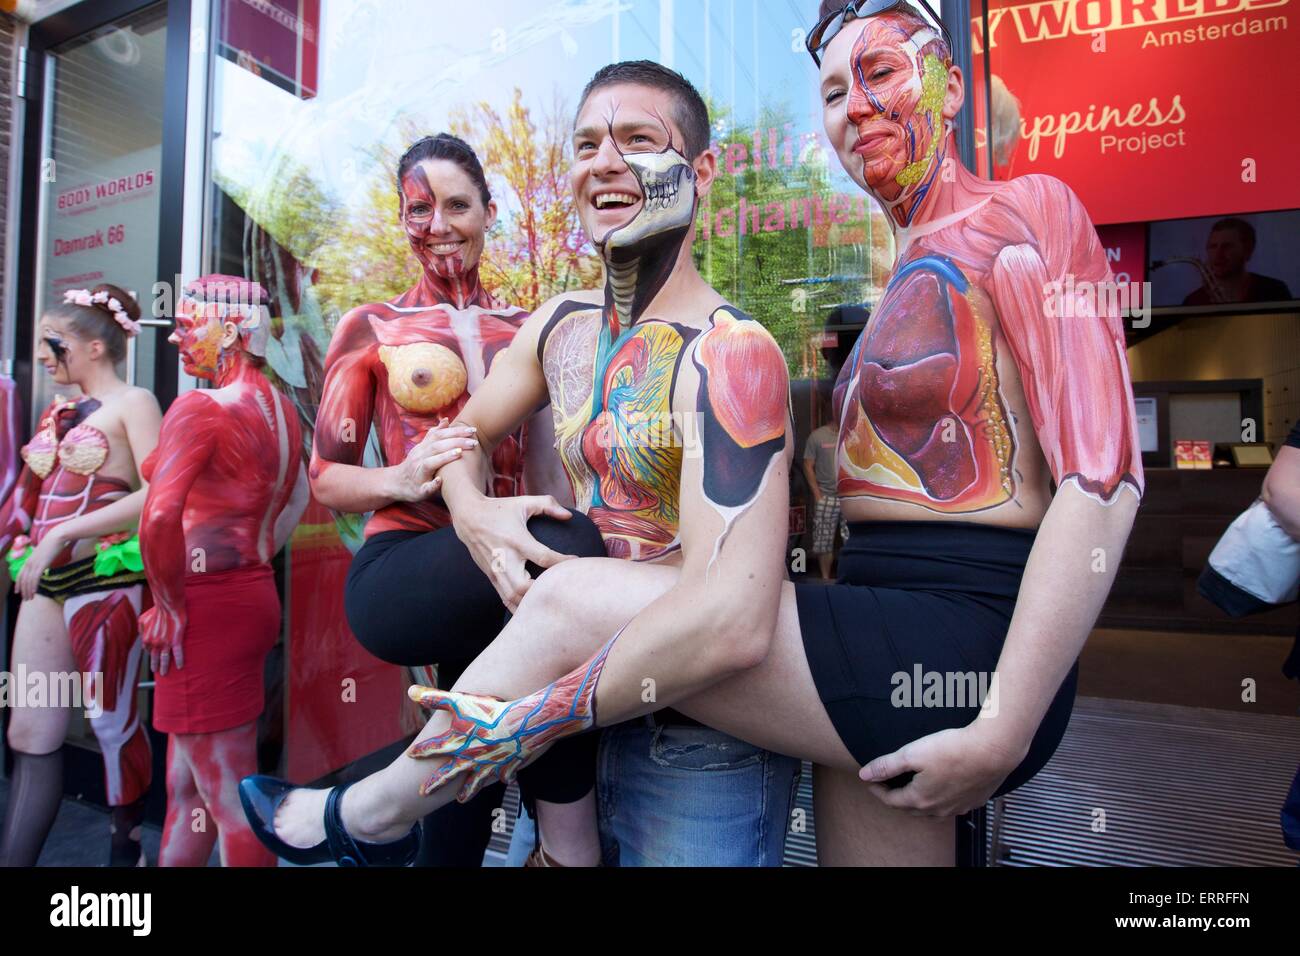 Amsterdam, Pays-Bas. 7 juin, 2015. Les modèles posent body painting pendant les "sous la peau", une exposition de peintures, corps anatomique à Dam Square dans le centre-ville d'Amsterdam, Pays-Bas, le 7 juin 2015. © Sylvia Lederer/Xinhua/Alamy Live News Banque D'Images